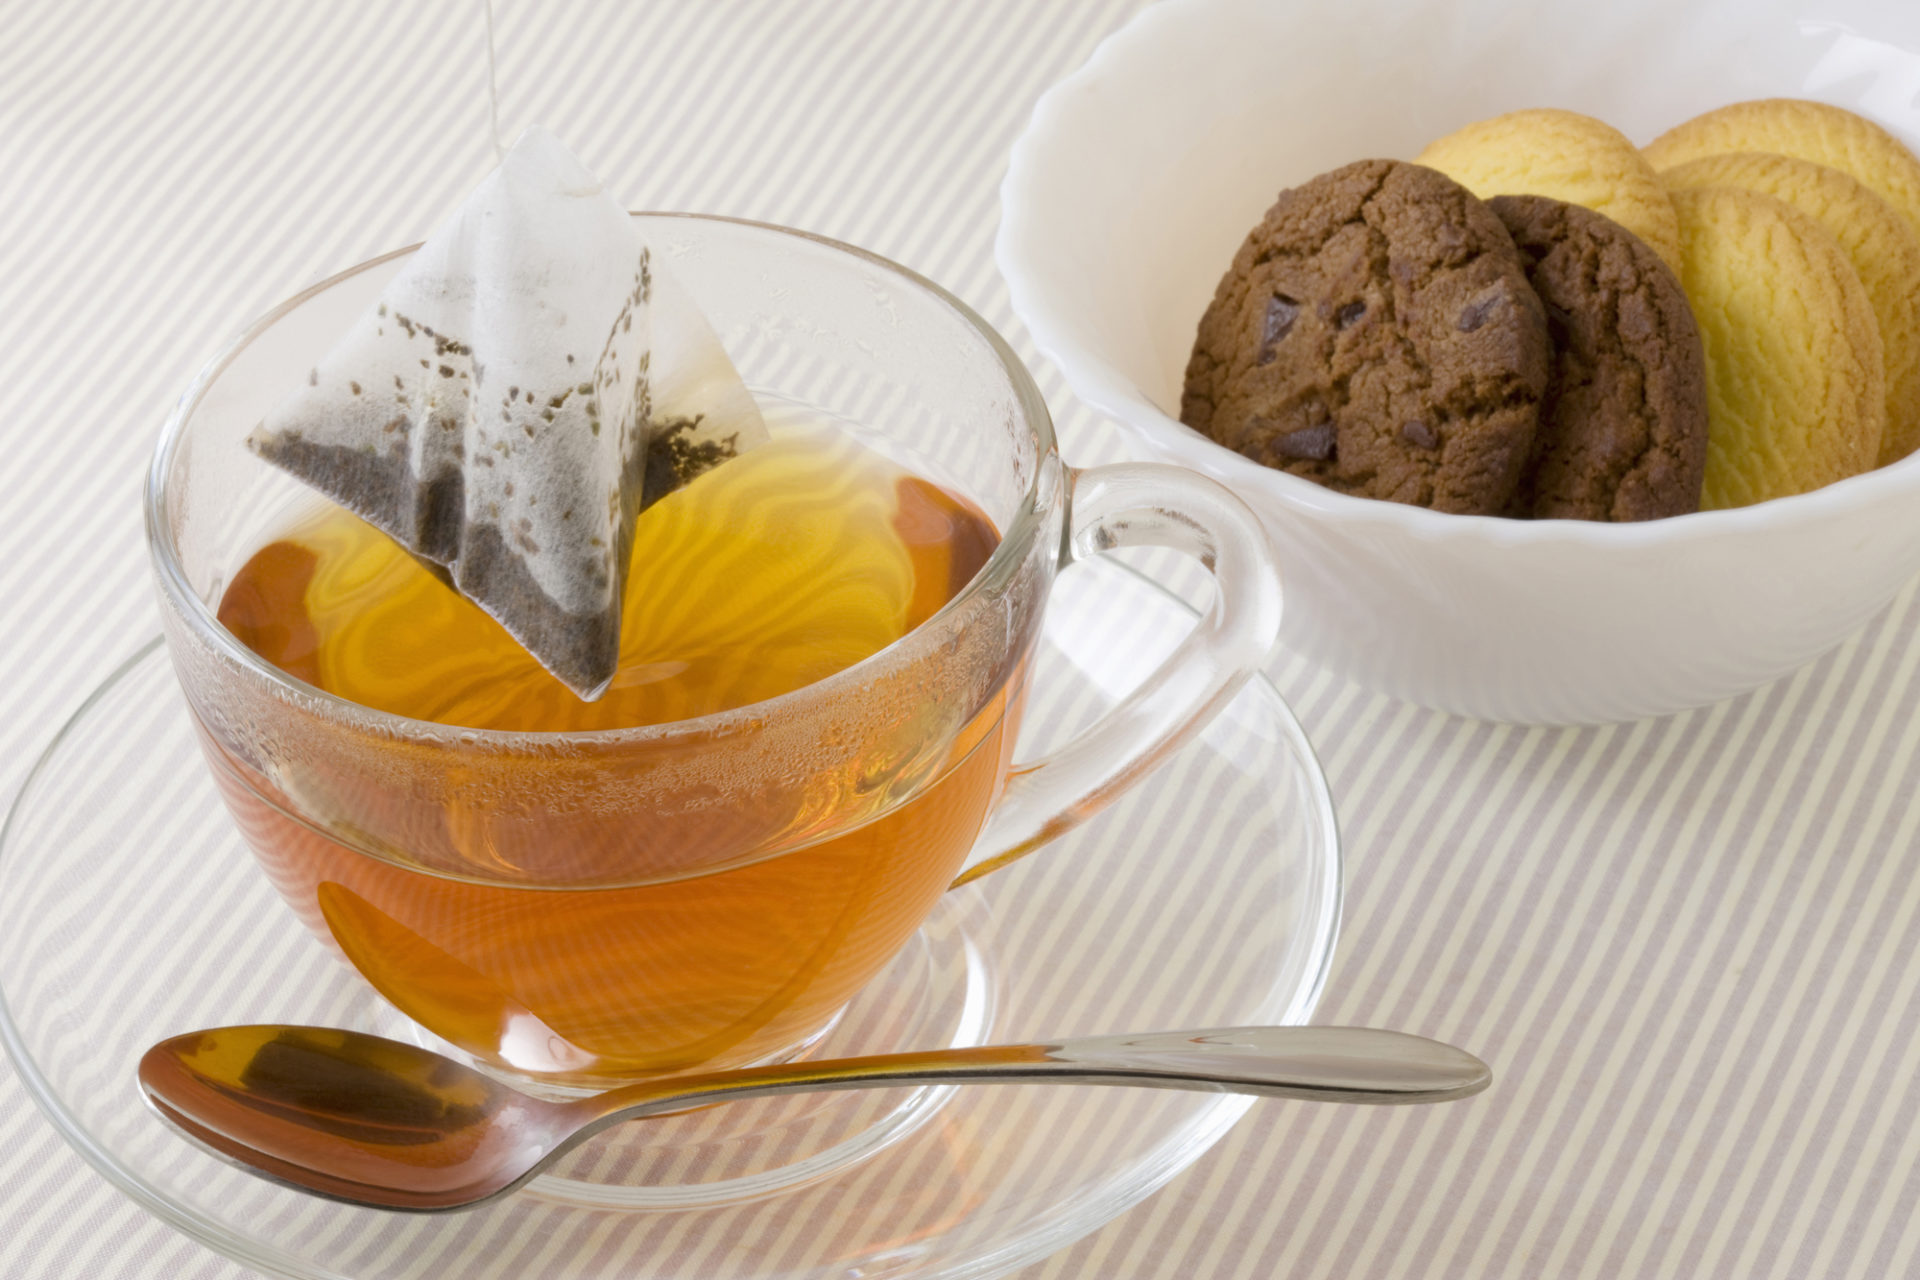 紅茶を肥料として再利用する際の注意点